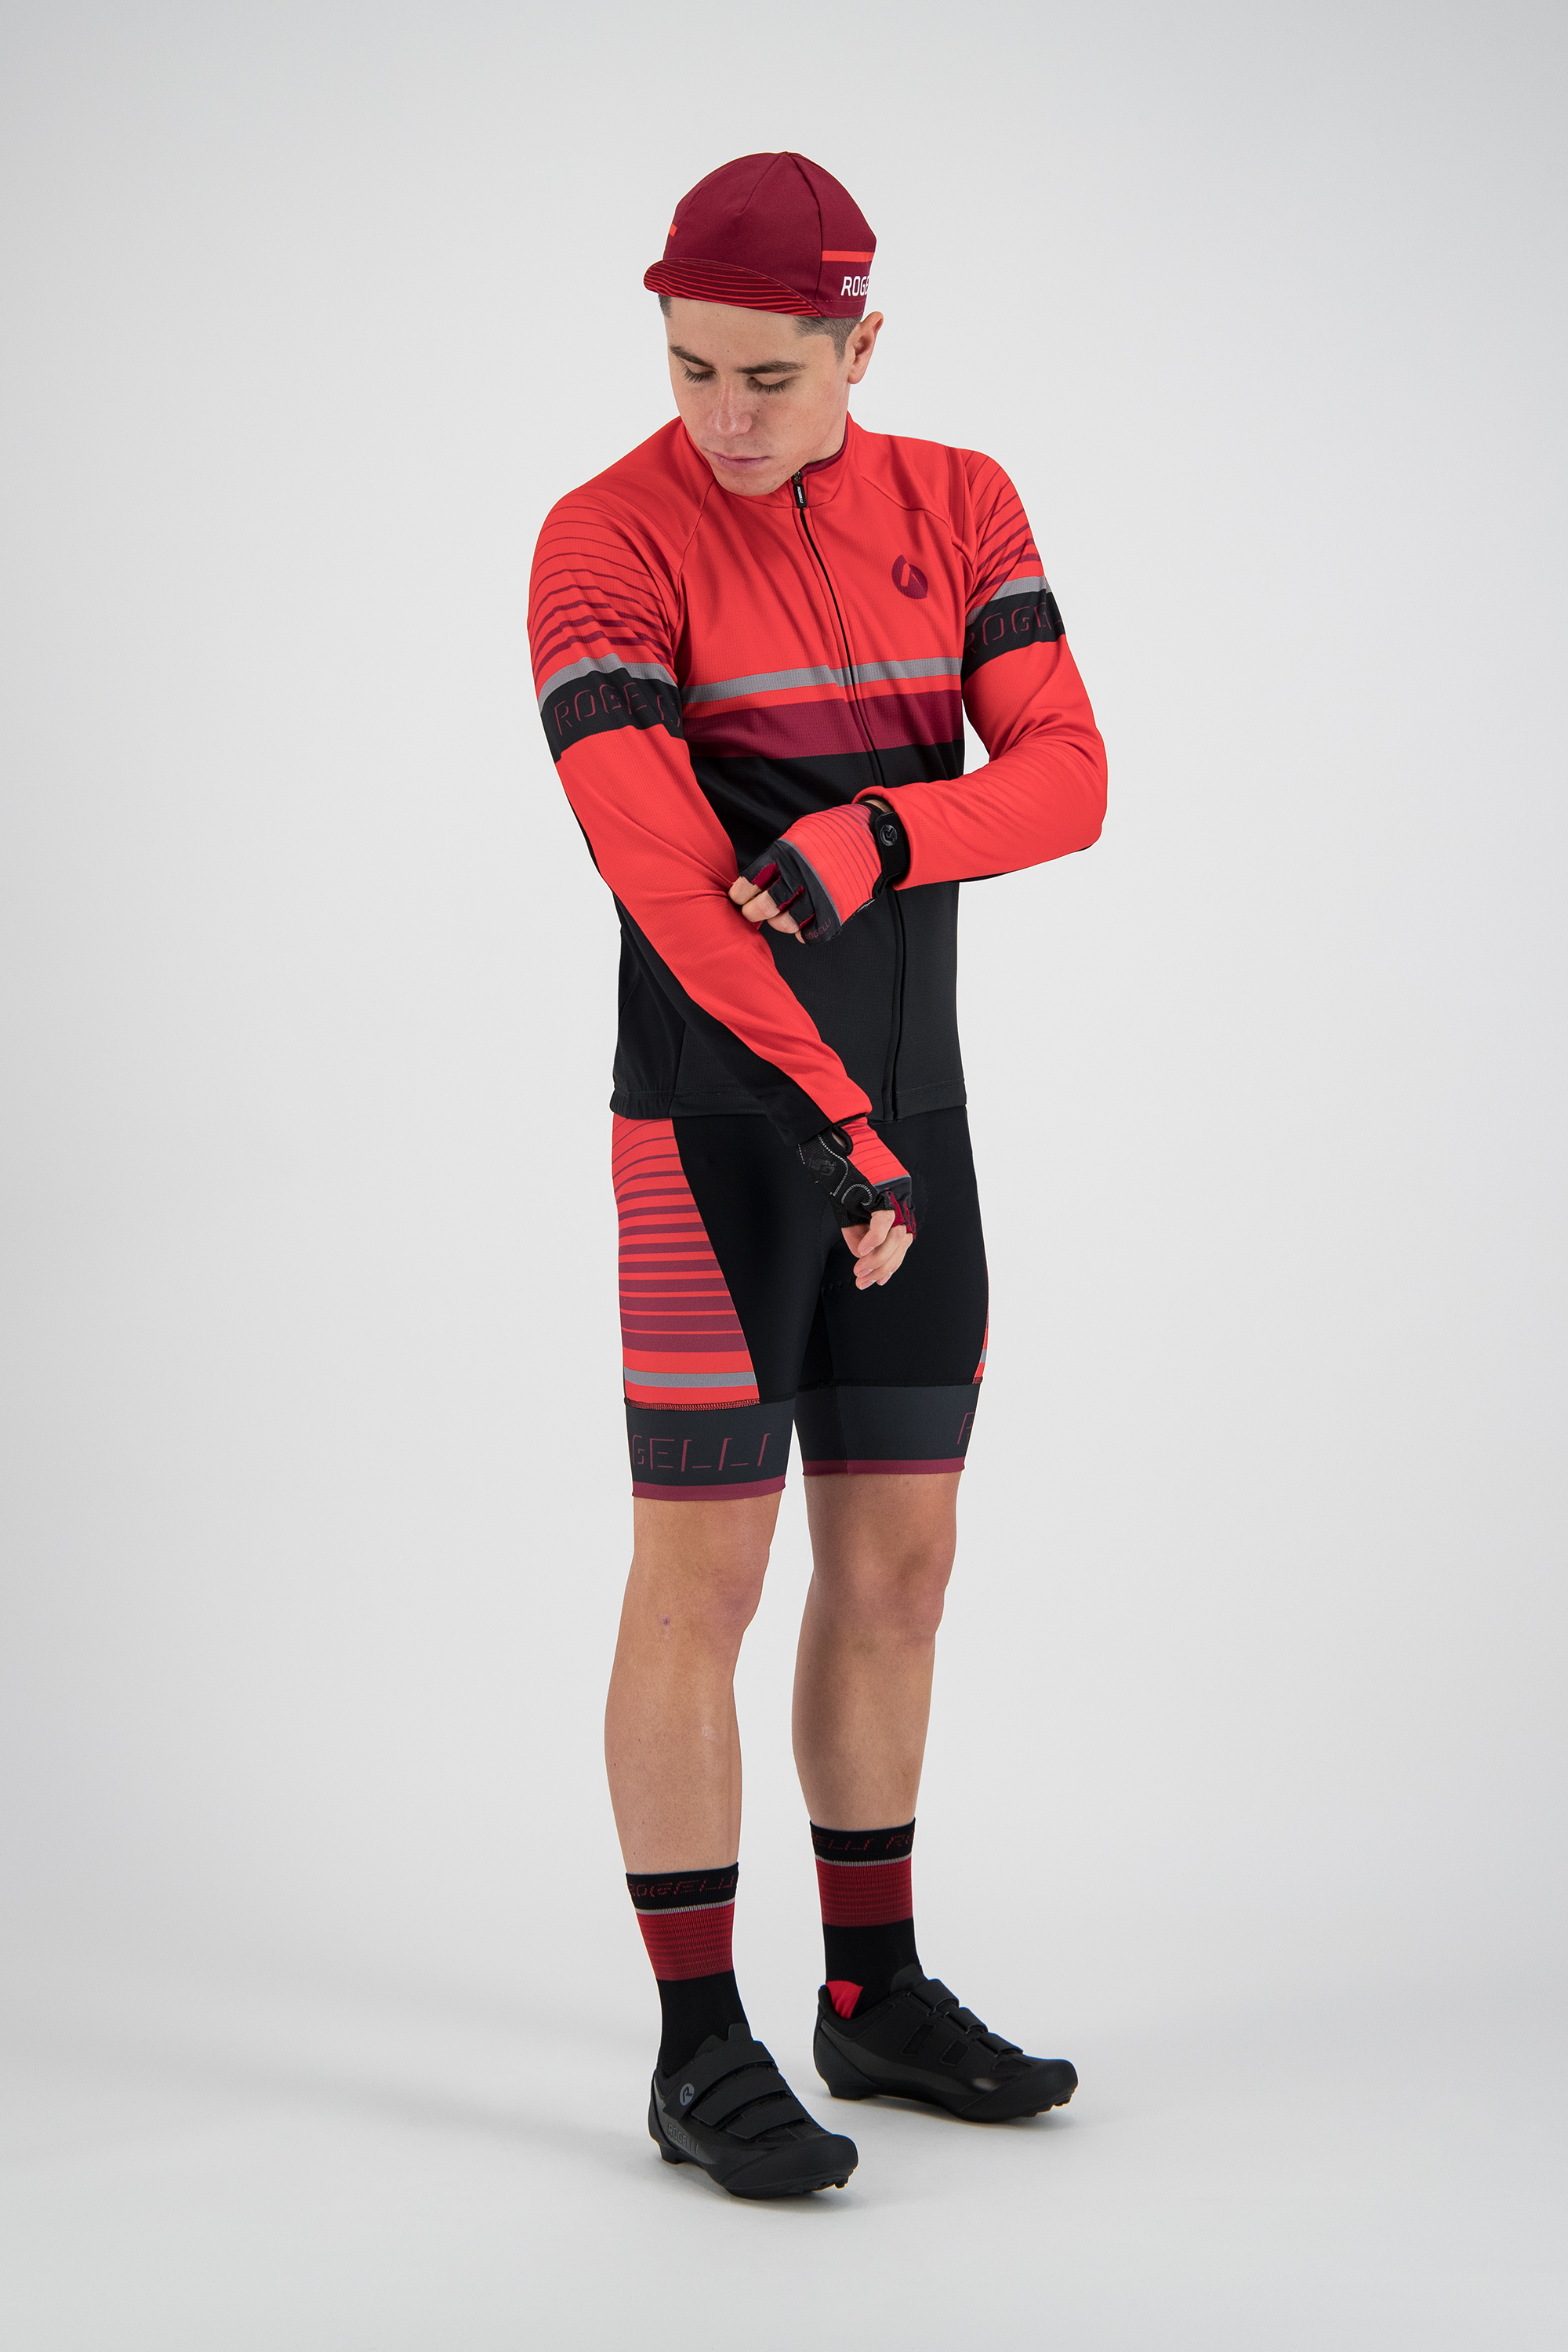 Hero fietsshirt LM Zwart/rood/bordeaux